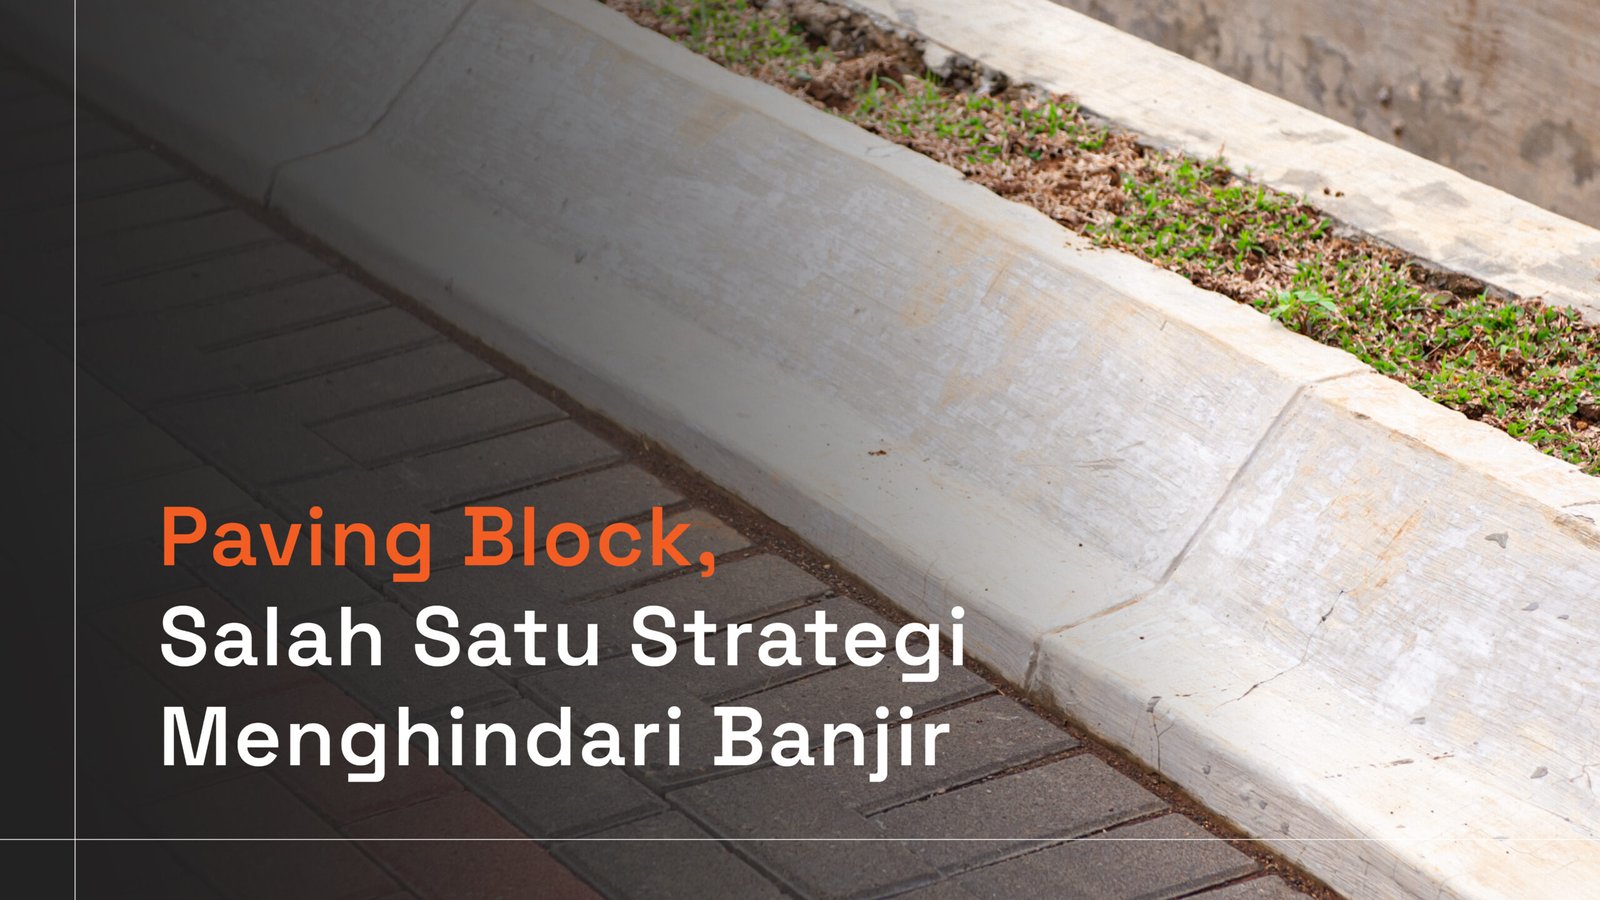 Read more about the article Paving Block, Salah Satu Strategi Menghindari Banjir.